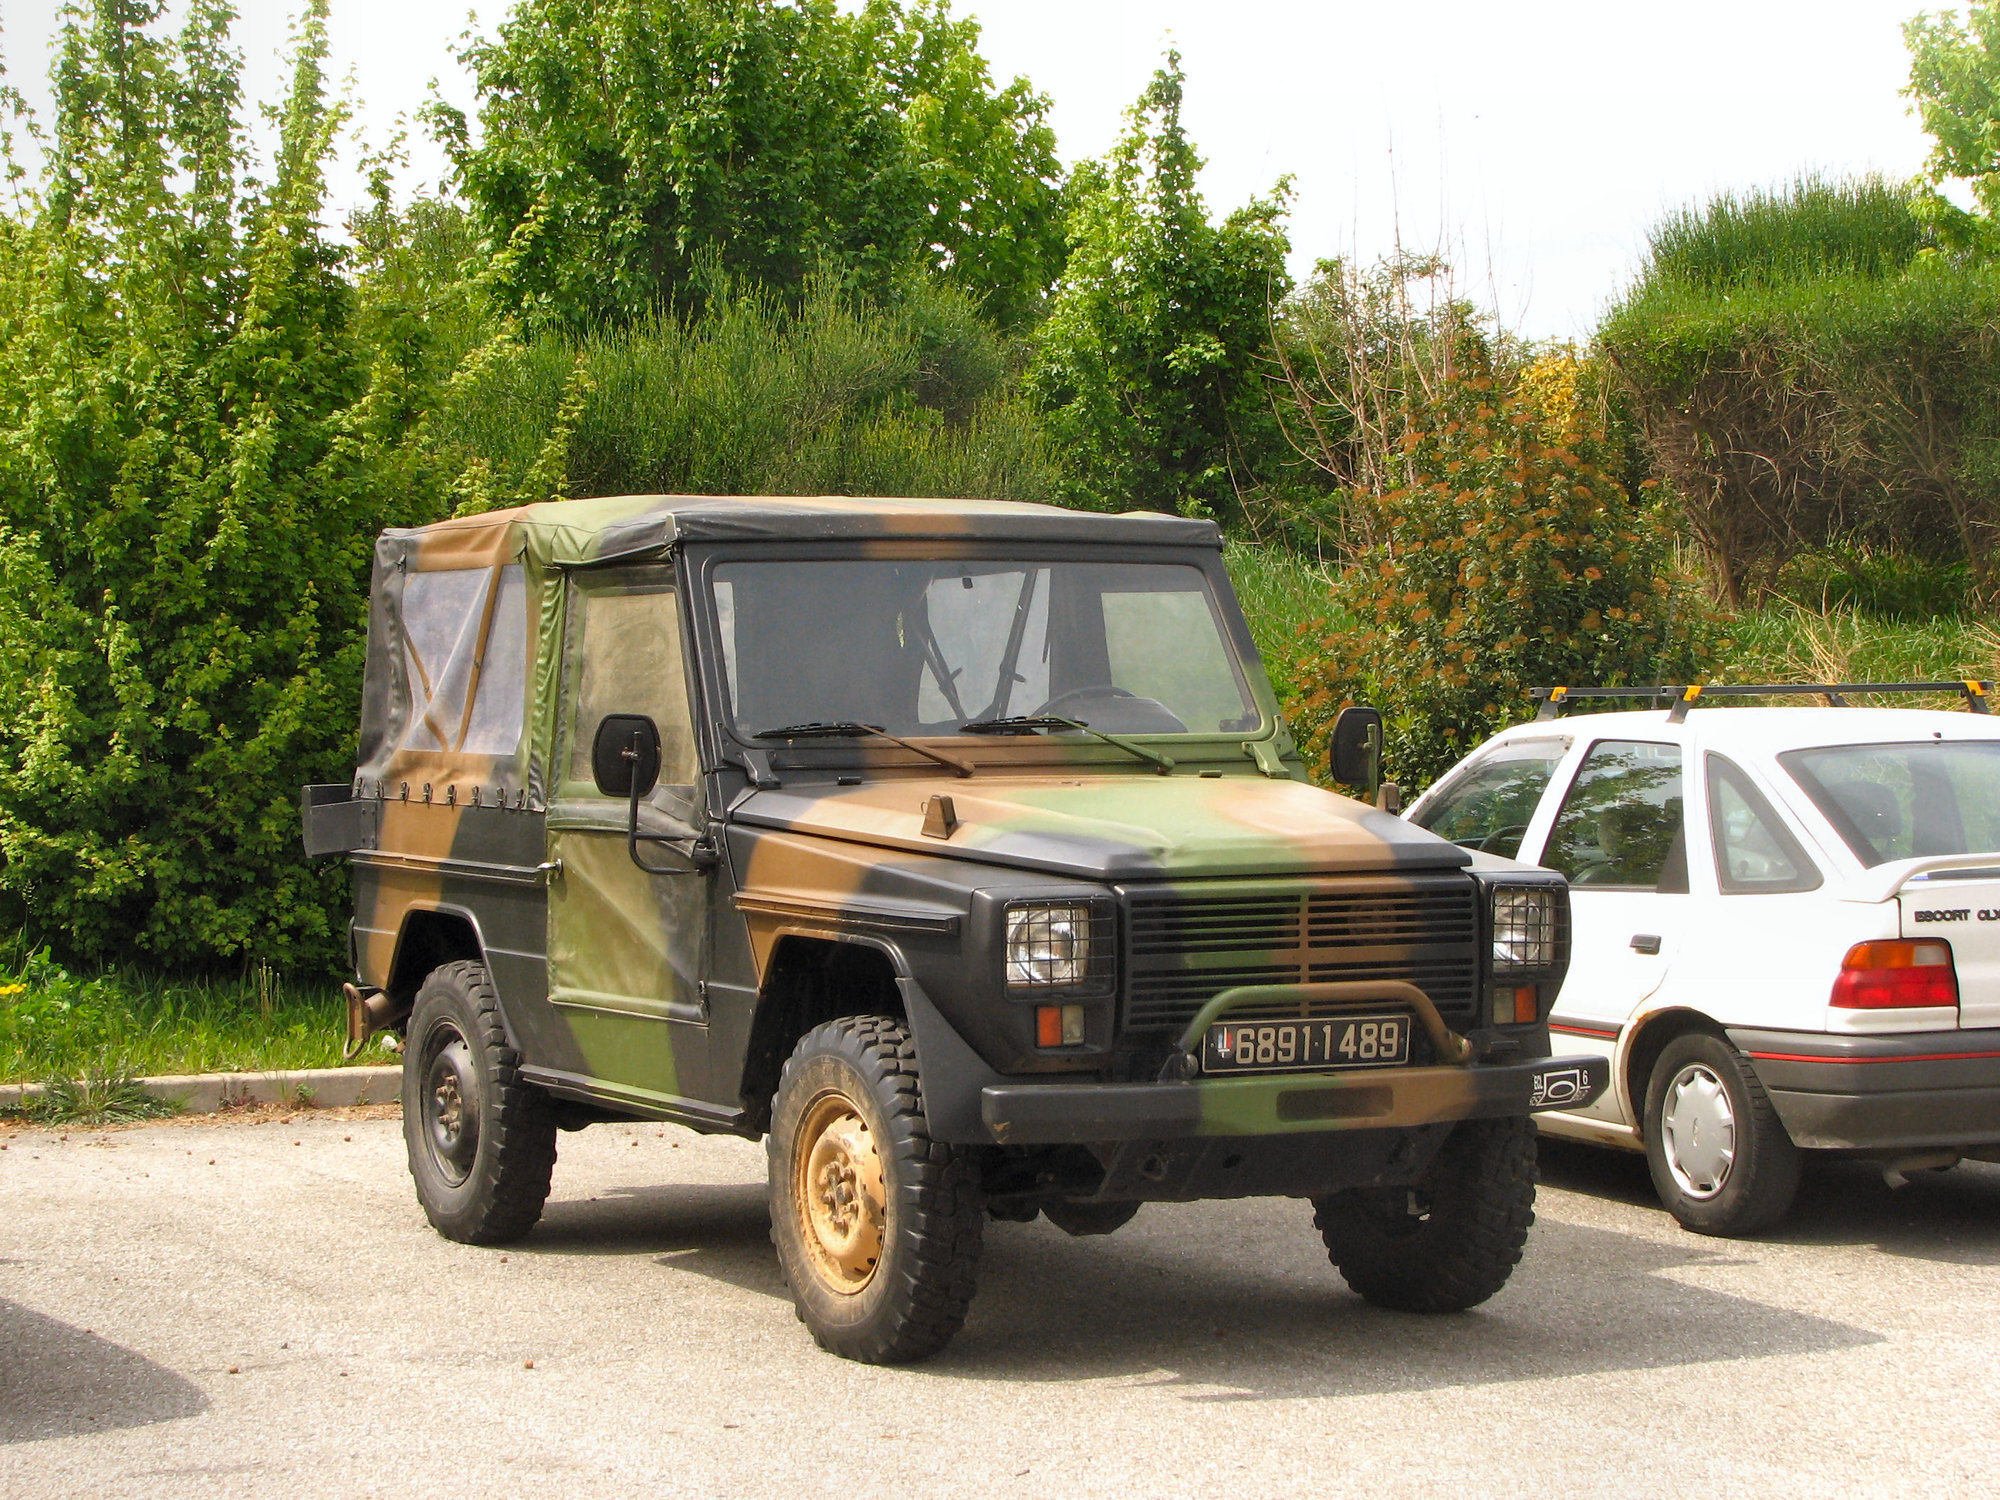 Vojenský Peugeot P4 vyjel poprvé v roce 1982.